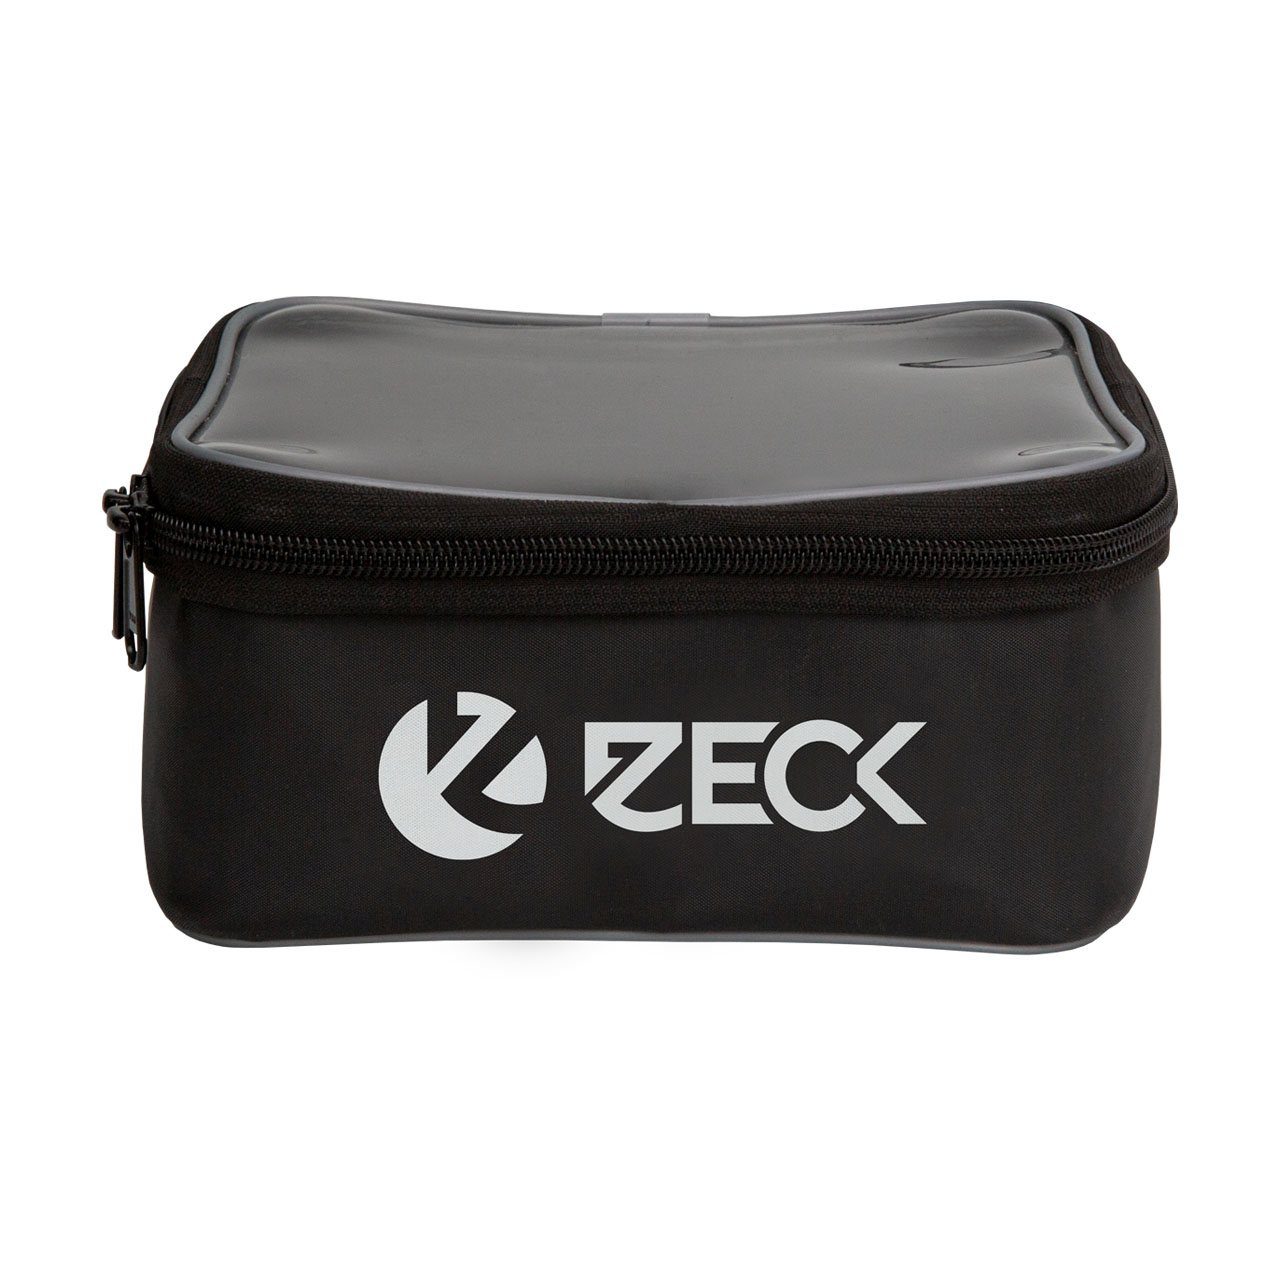 Zeck Rig Bag Pro 29x19x18cm Tacklebox für Angelzubehör zum Wallerangeln Tackletasche Angeltasche für Kleinteile & Vorfächer 